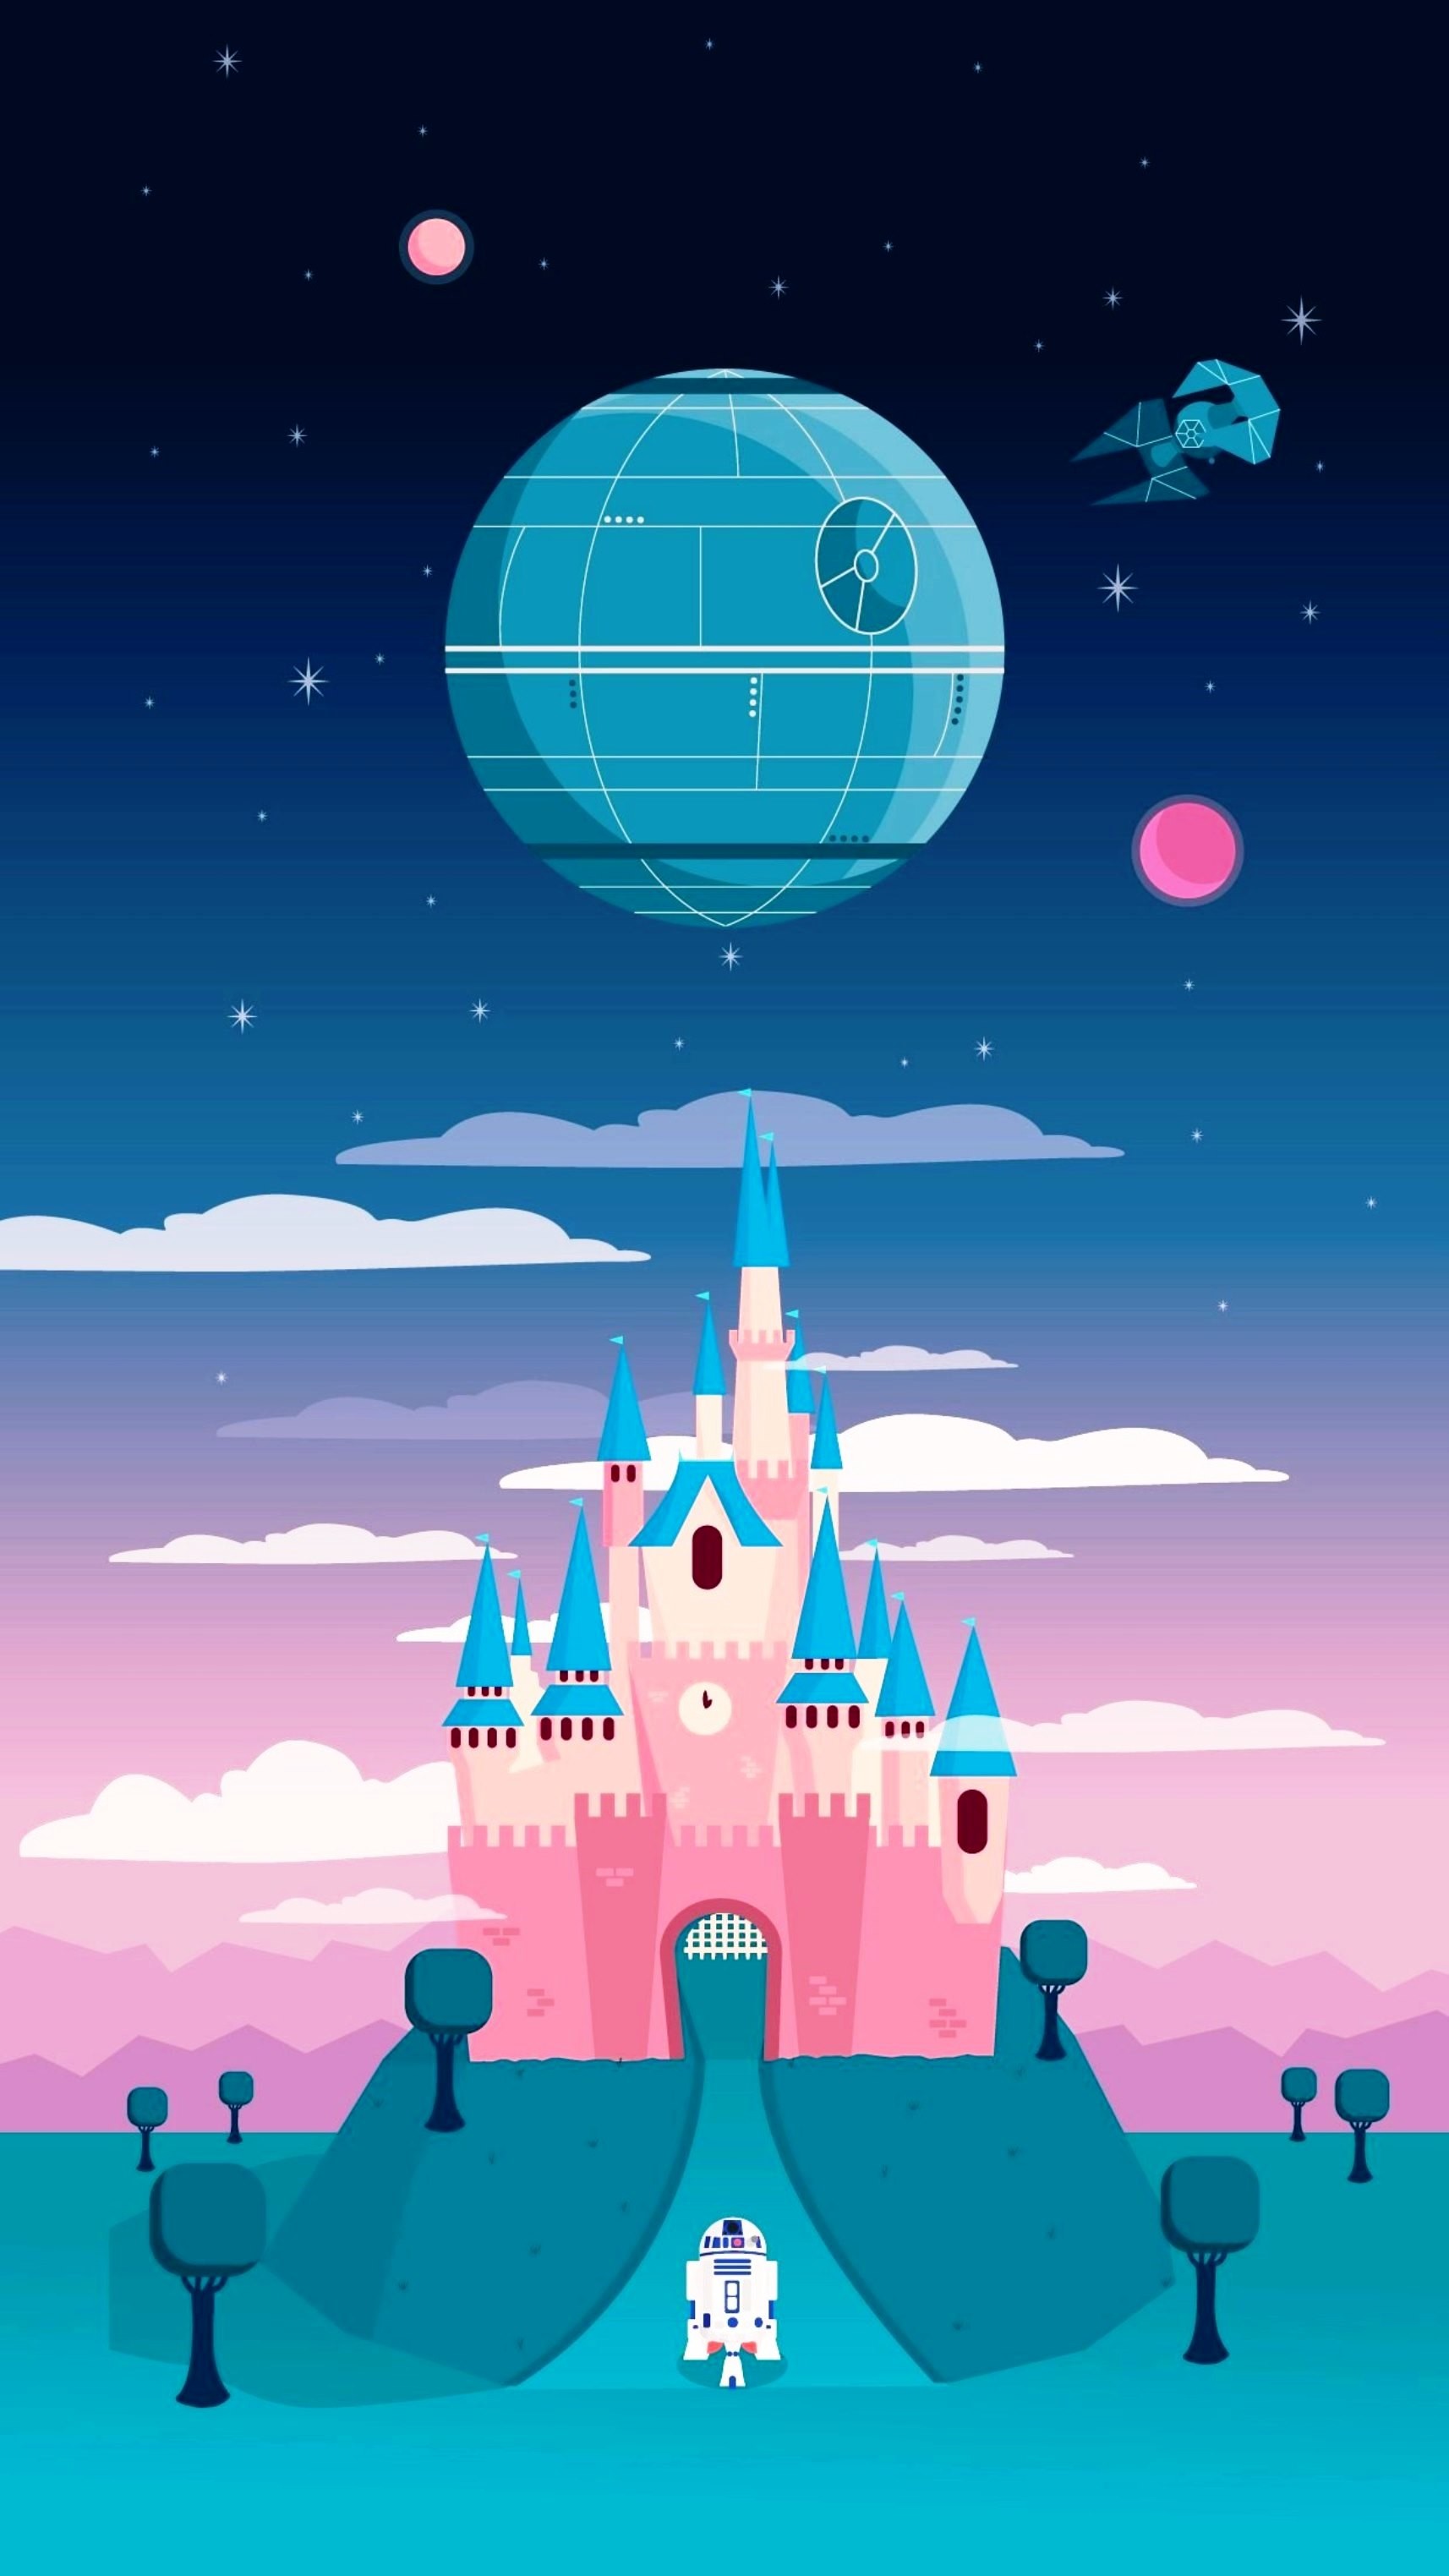 1714x3047 best ideas about Disney wallpaper on Pinterest Disney Â· Disney  BackgroundDisney Wallpaper